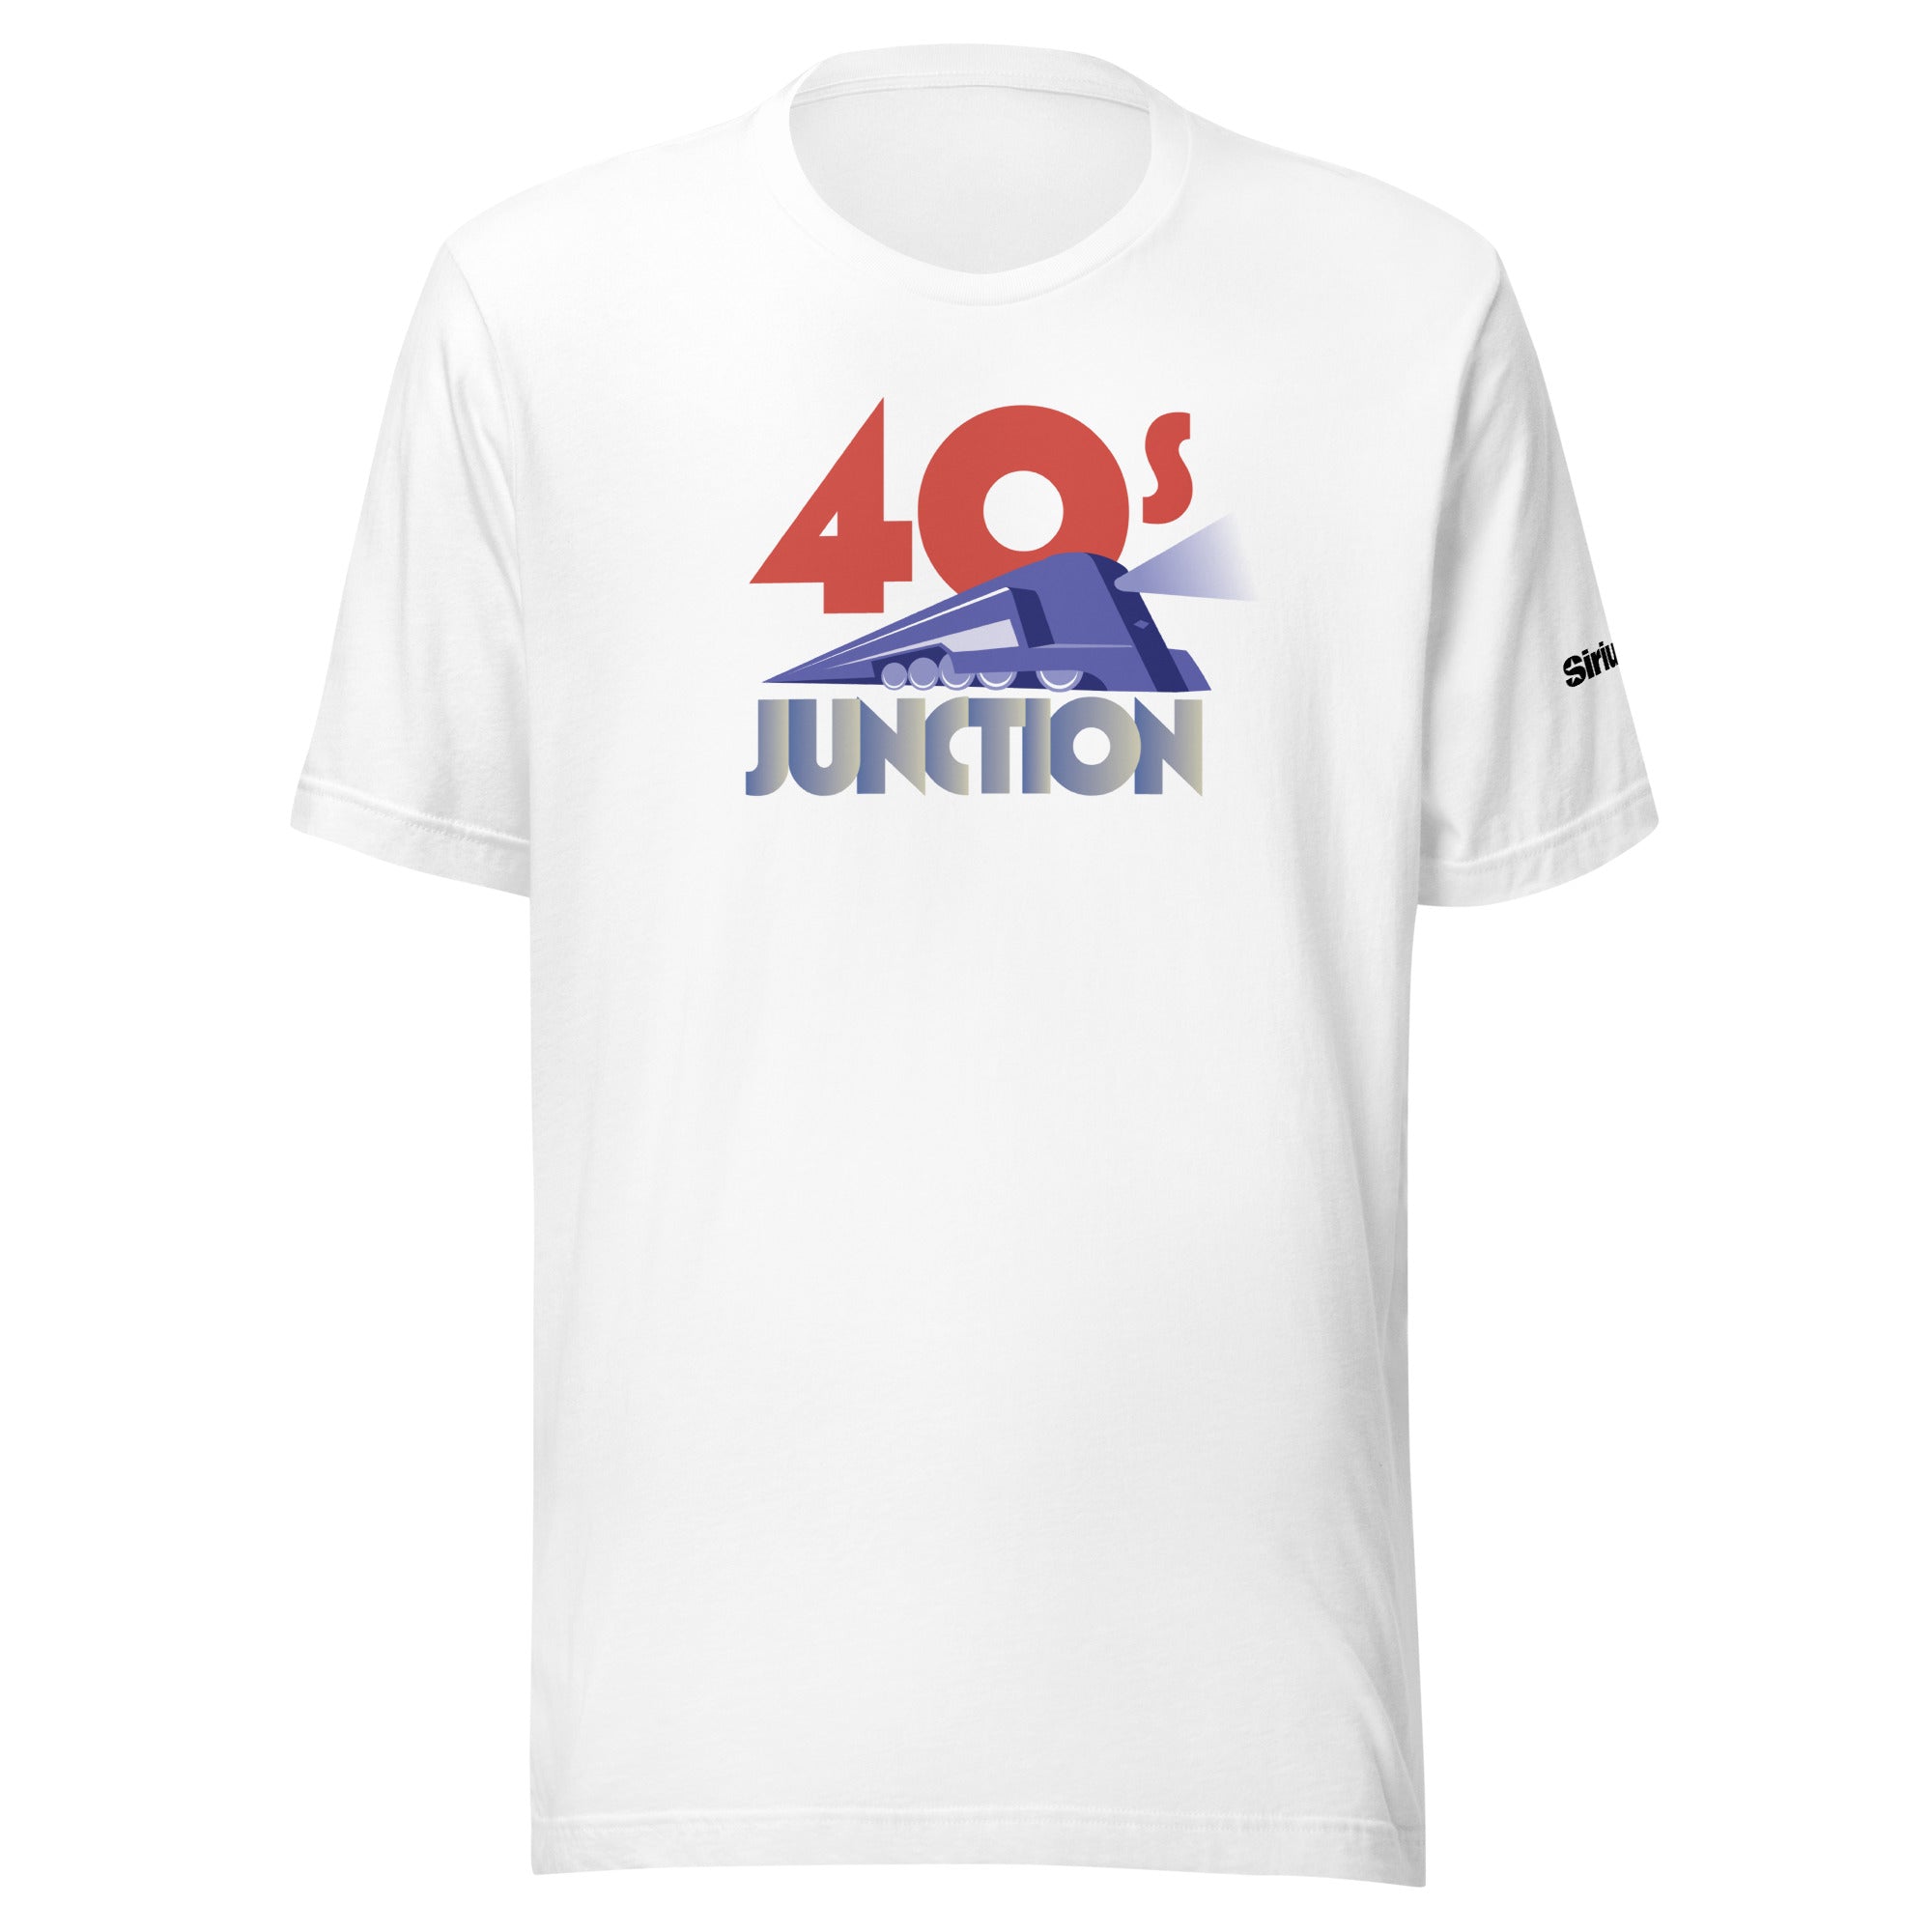 40s Junction: T-shirt (White)